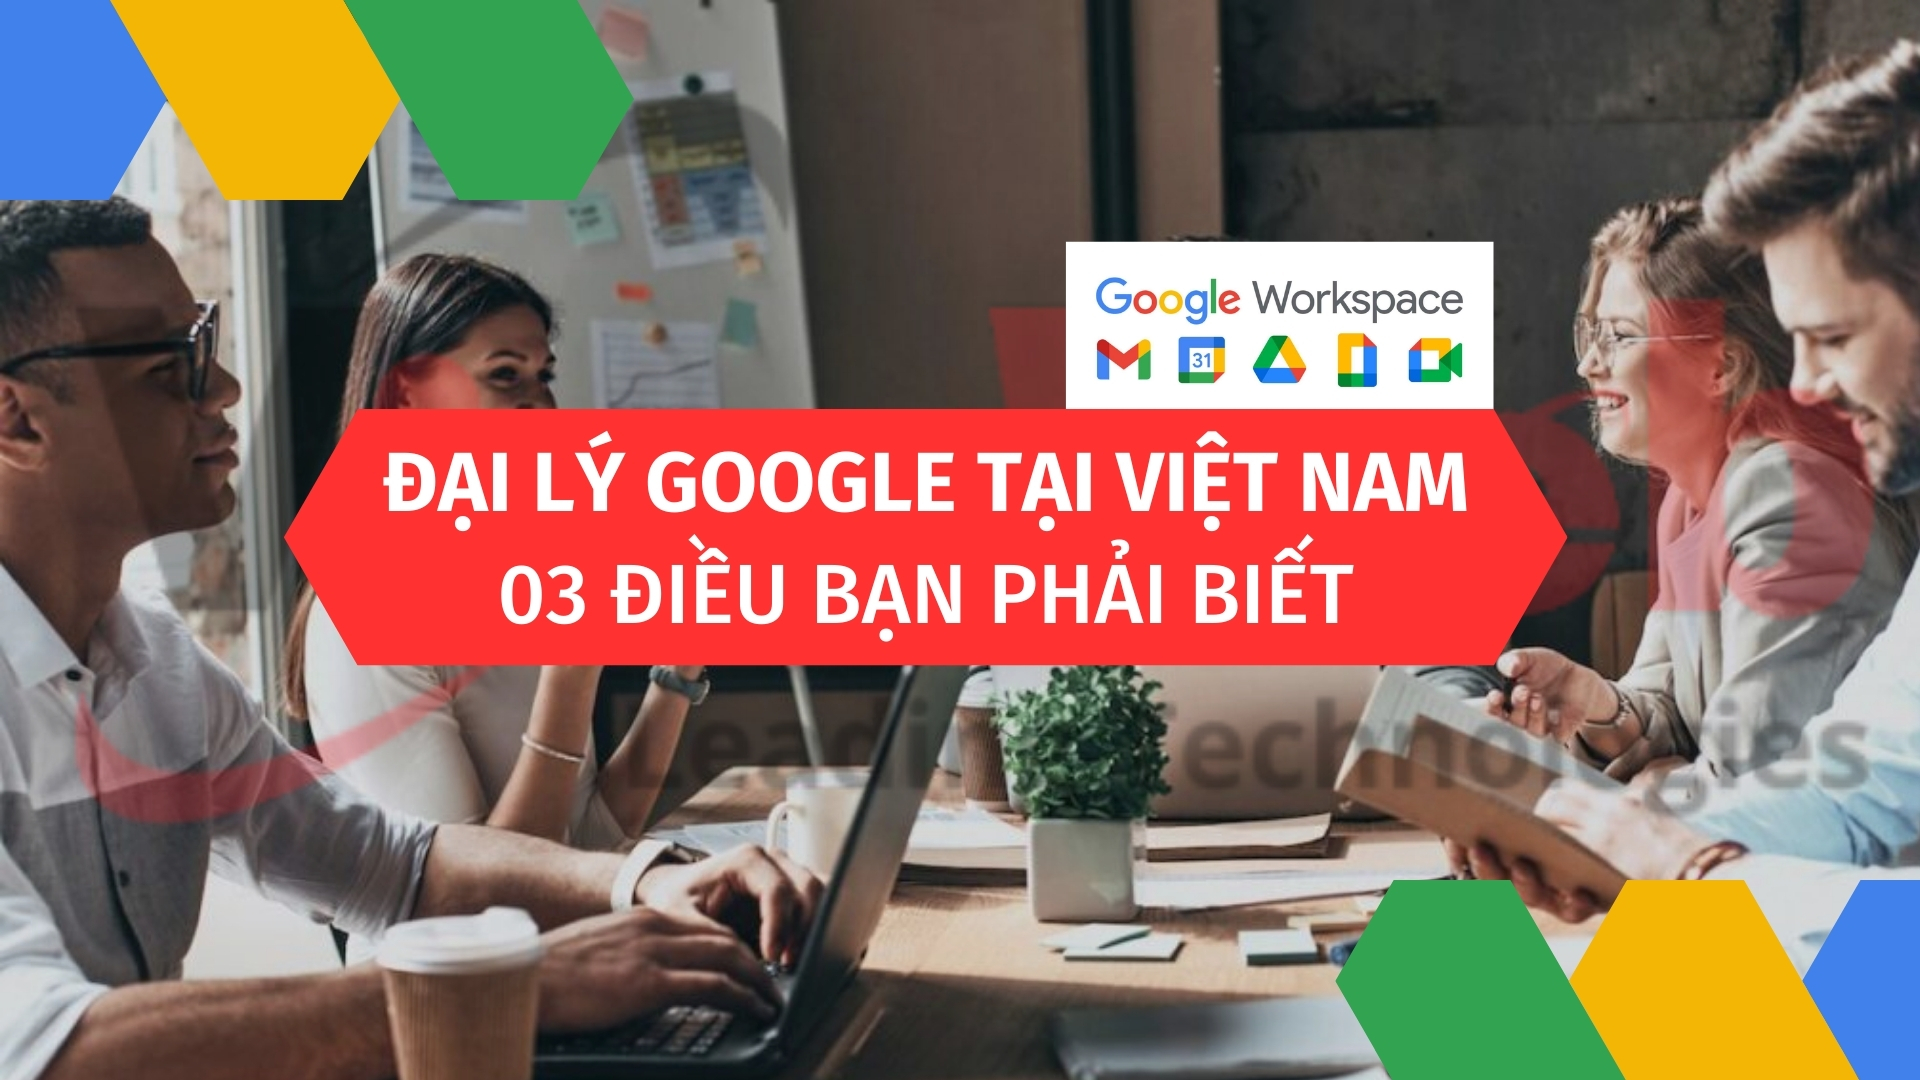 Đại lý Google tại Việt Nam: 03 điều bạn phải biết